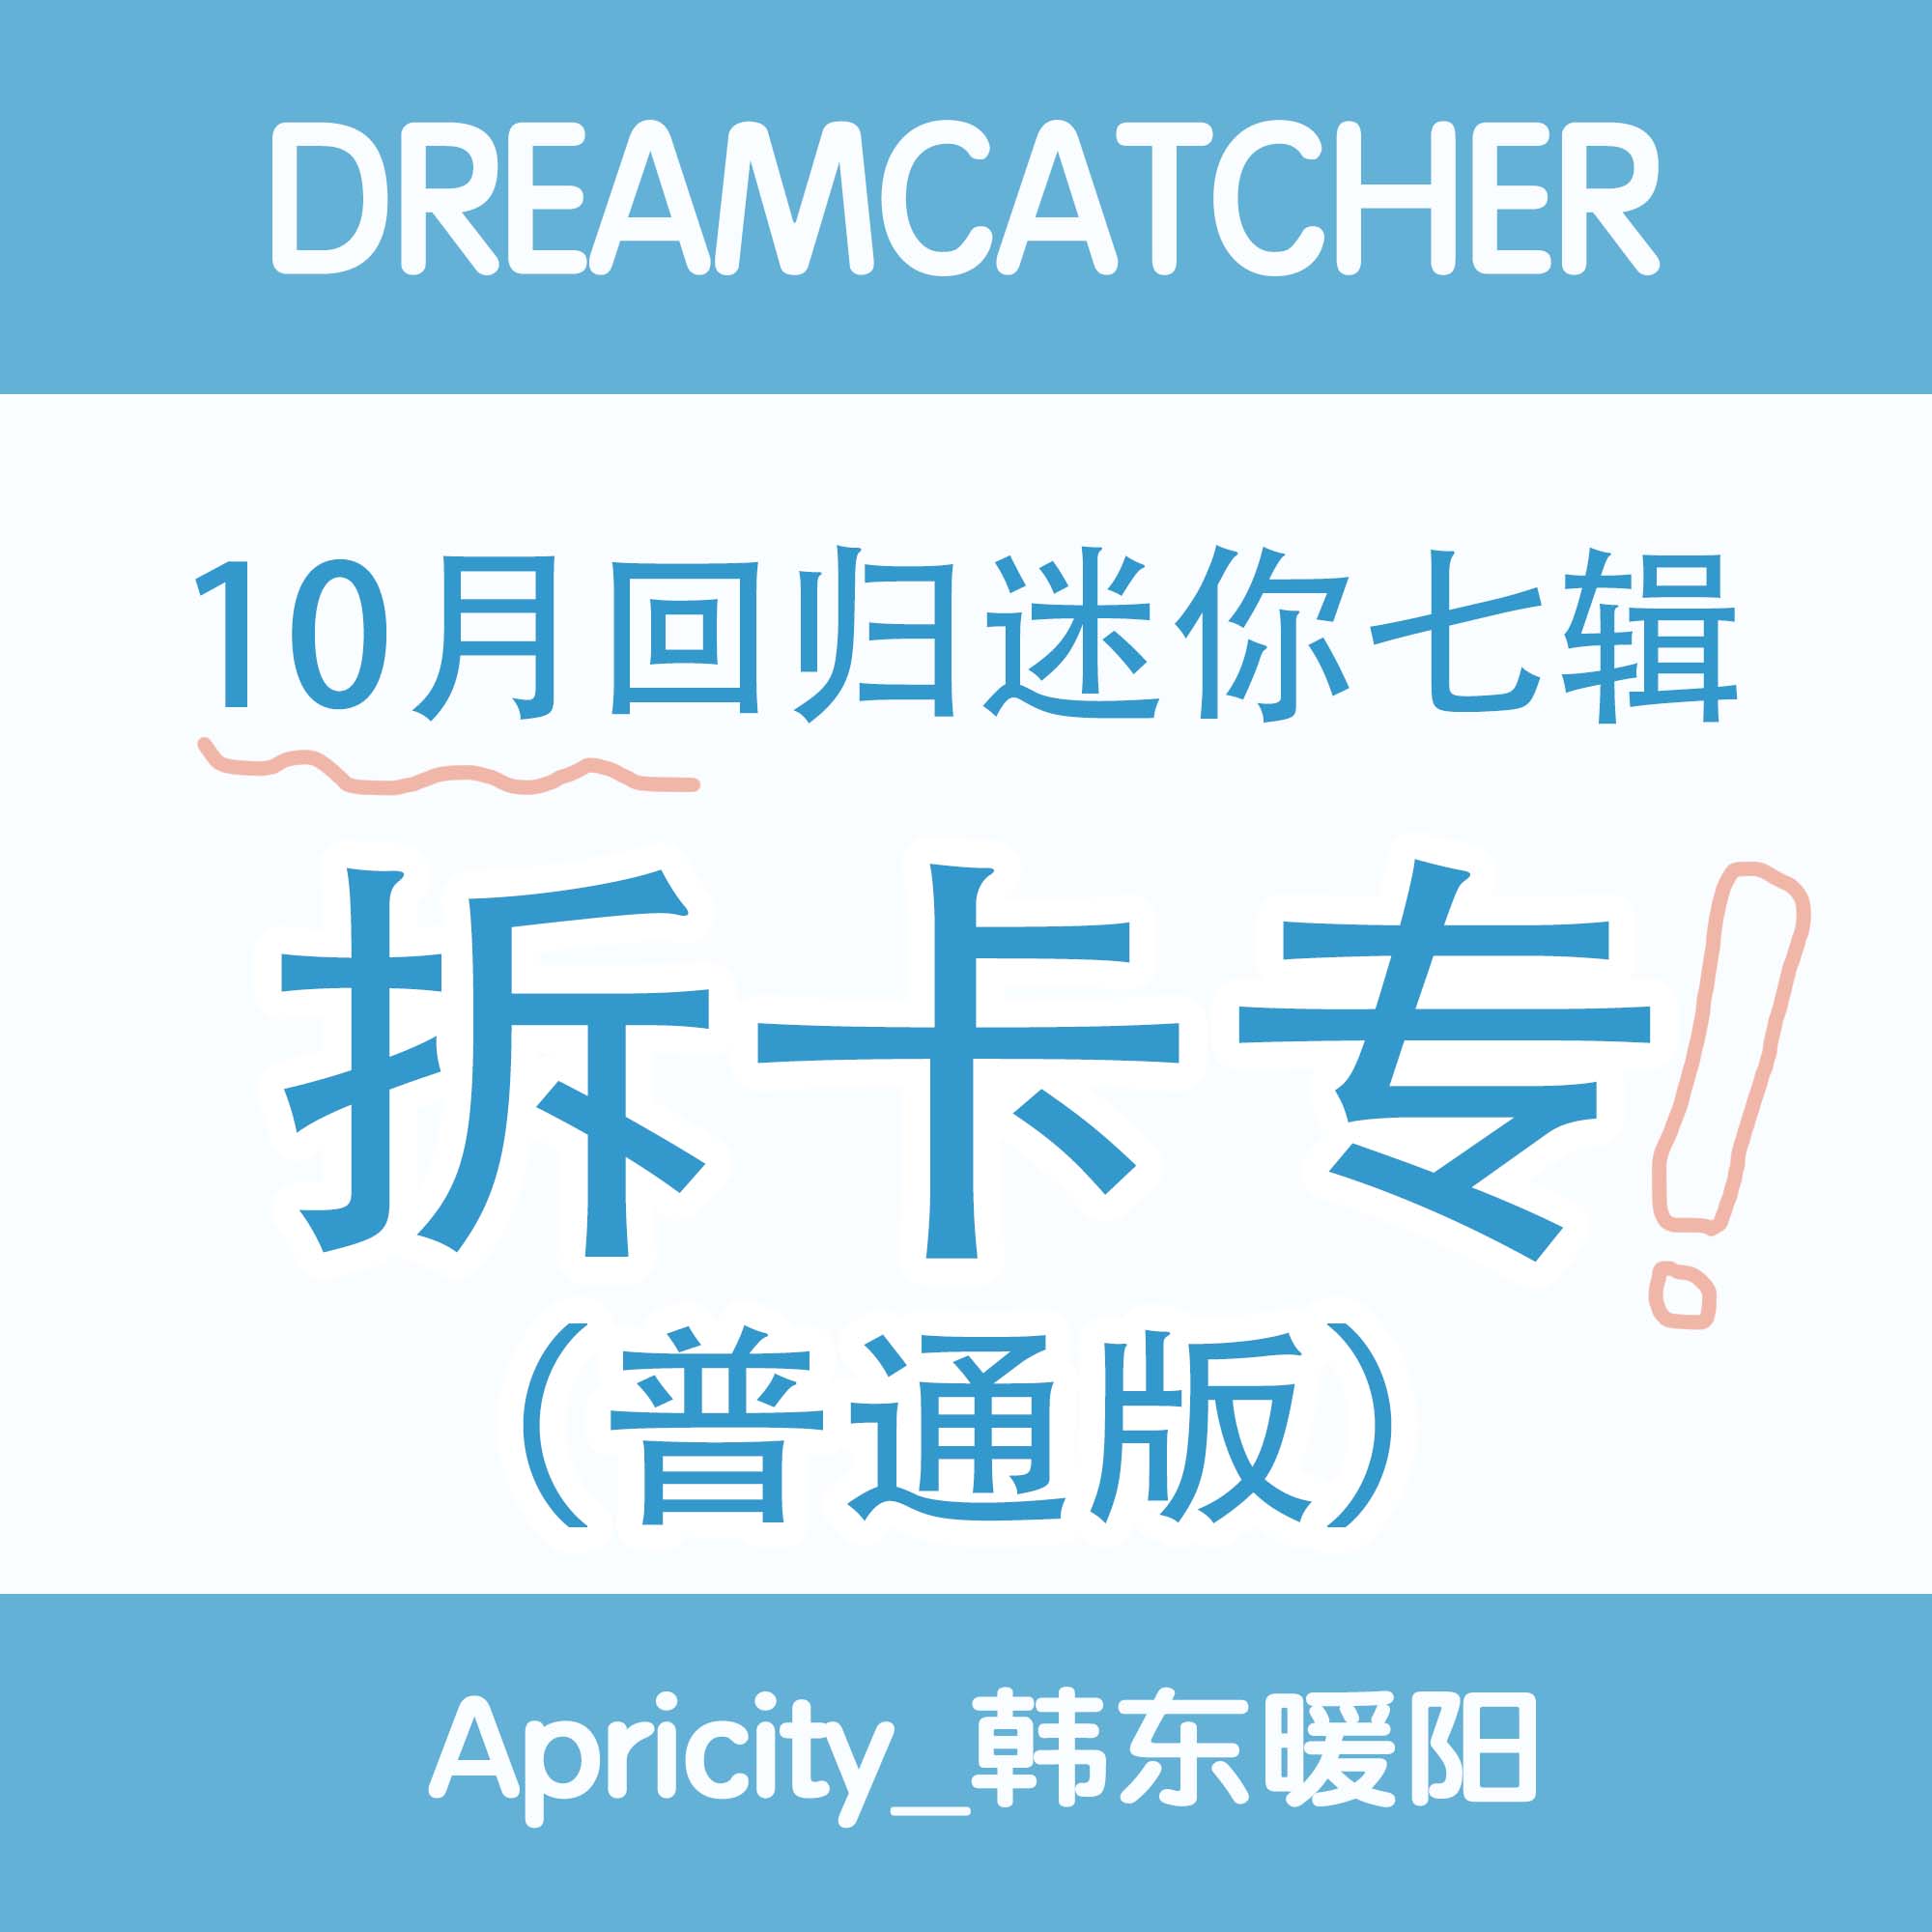 [拆卡专 普通版] Dreamcatcher 十月回归拆卡专_Apricity_韩东暖阳站